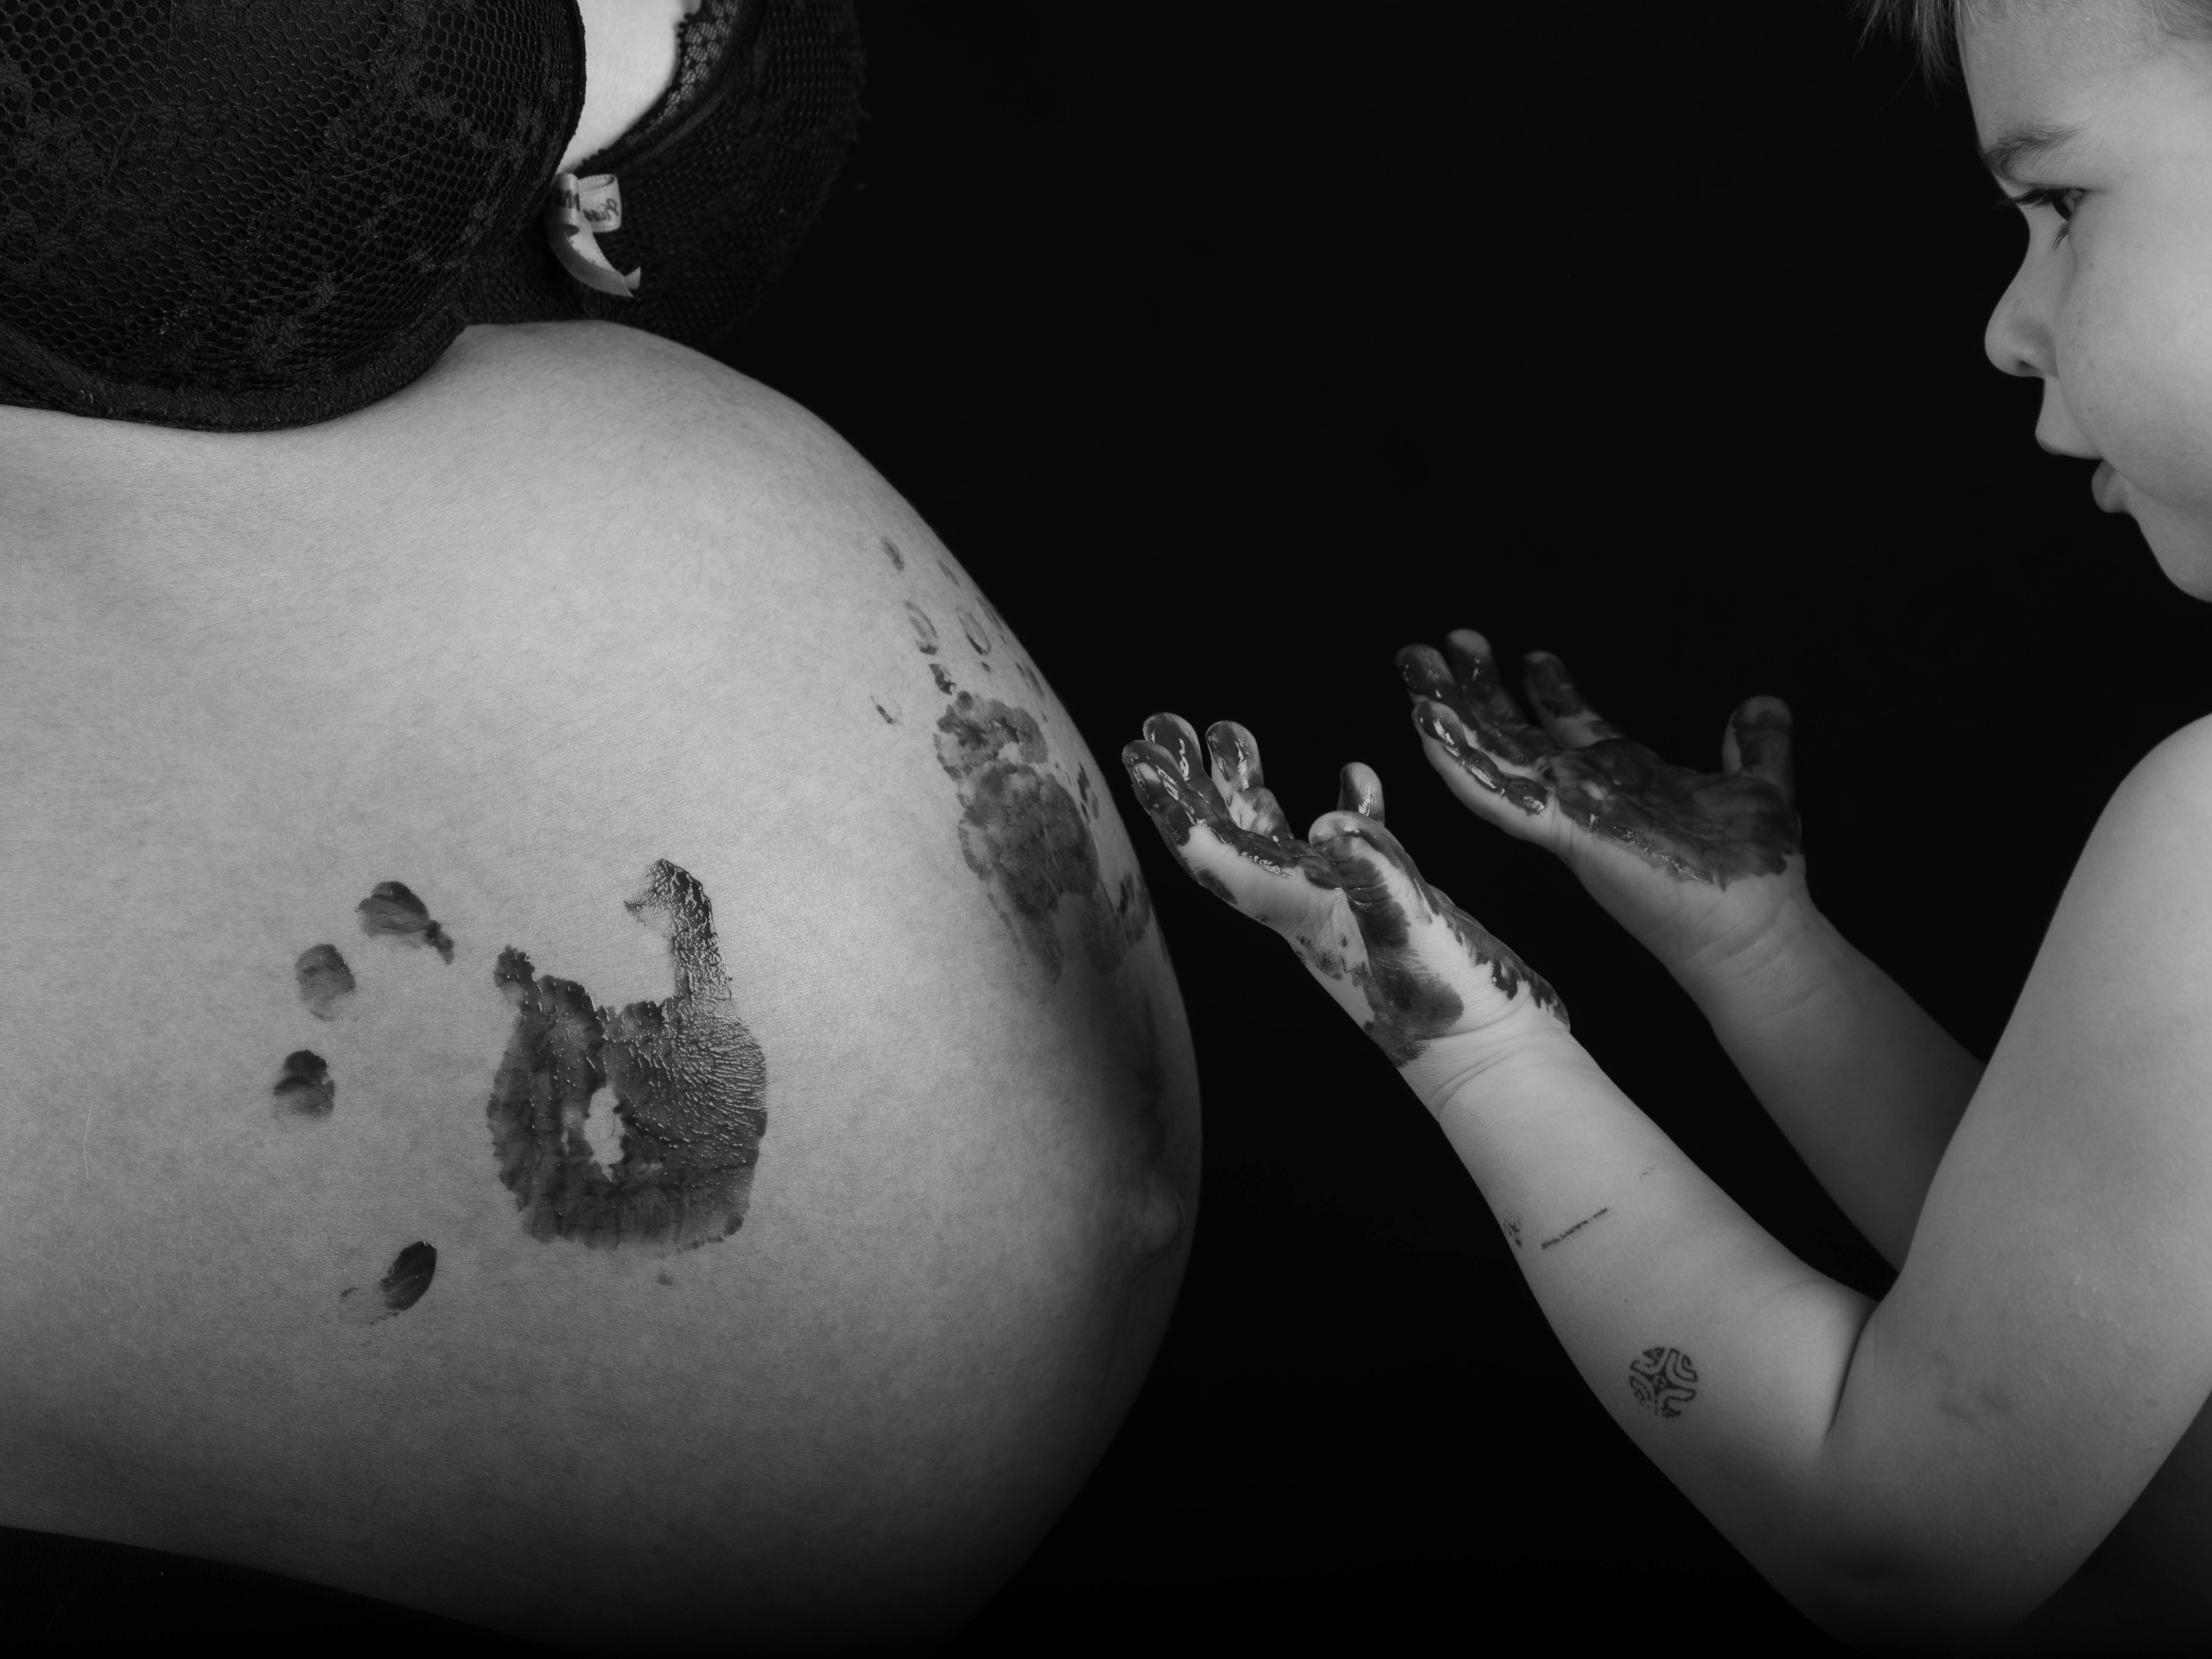 photo noir et blanc d'un ventre de femme enceinte avec les mains de sont enfant en peinture dessus. on voit également la moitié du visage de son enfant qui regarde ses mains barbouillées de peinture